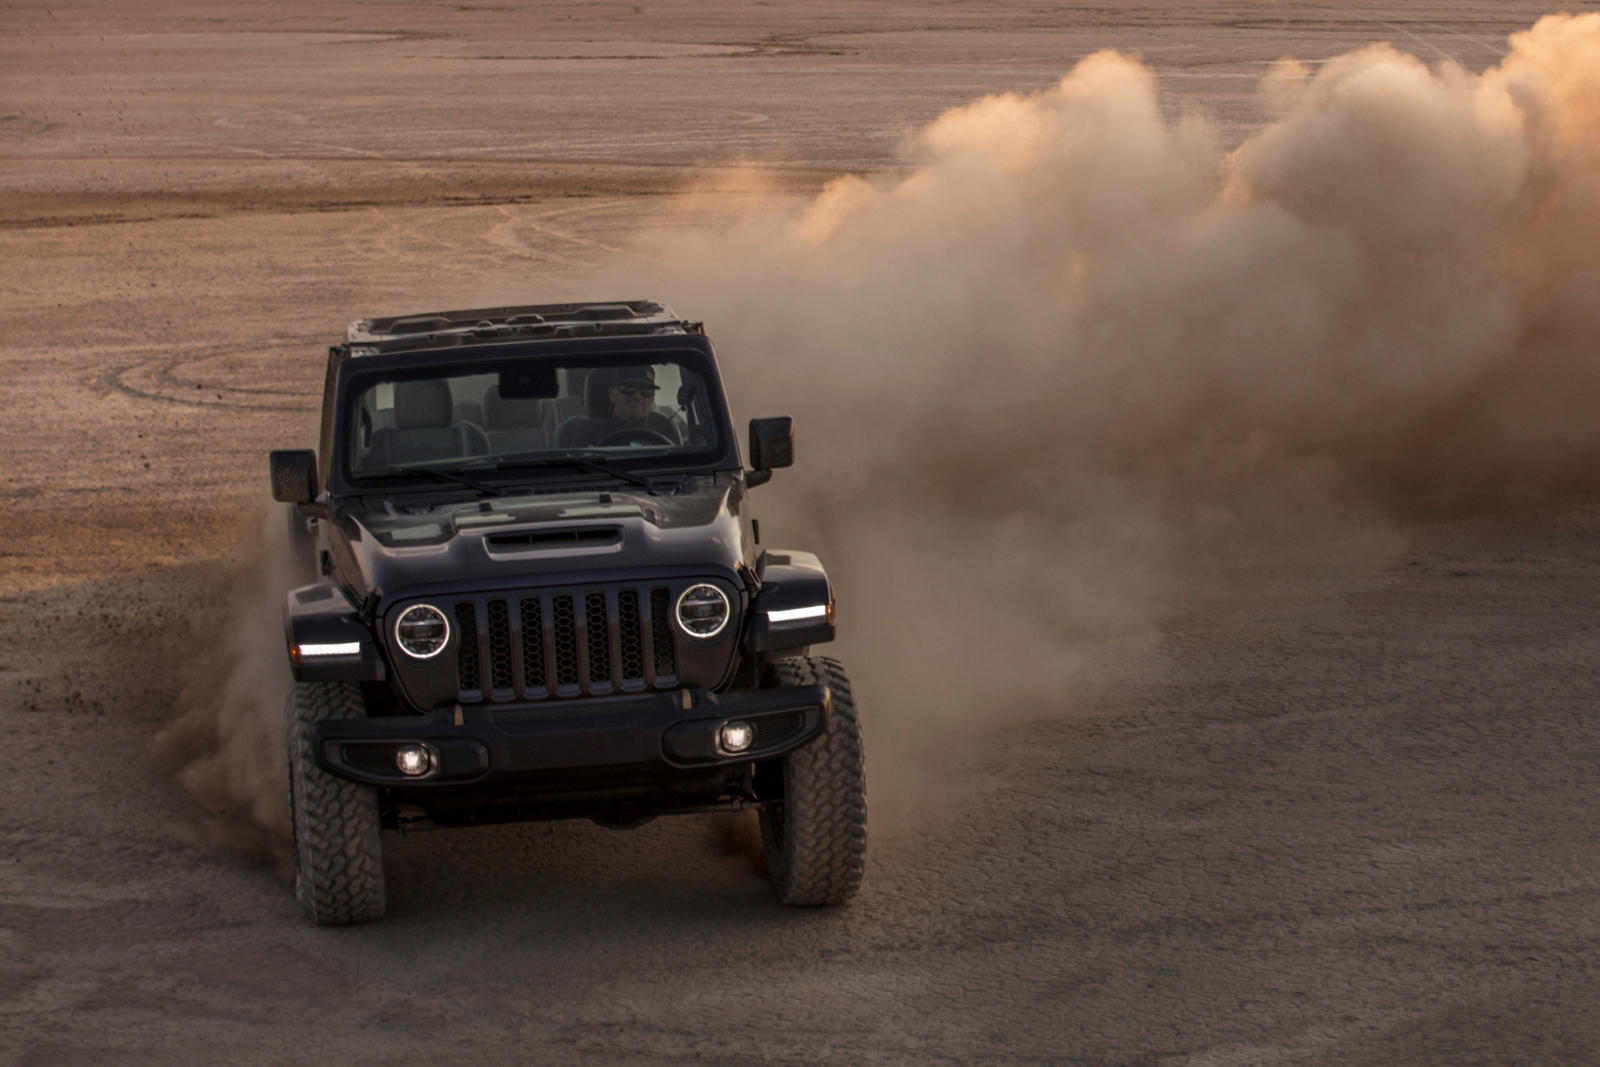 Оказывается, утечка информации о ценах была не совсем верной. Jeep официально объявил стартовую цену Wrangler Rubicon 392 в размере 5,4 млн рублей за модель Launch Edition. Как и предполагалось, это самый дорогой продукт Stelantis с 6,4-литровым двиг